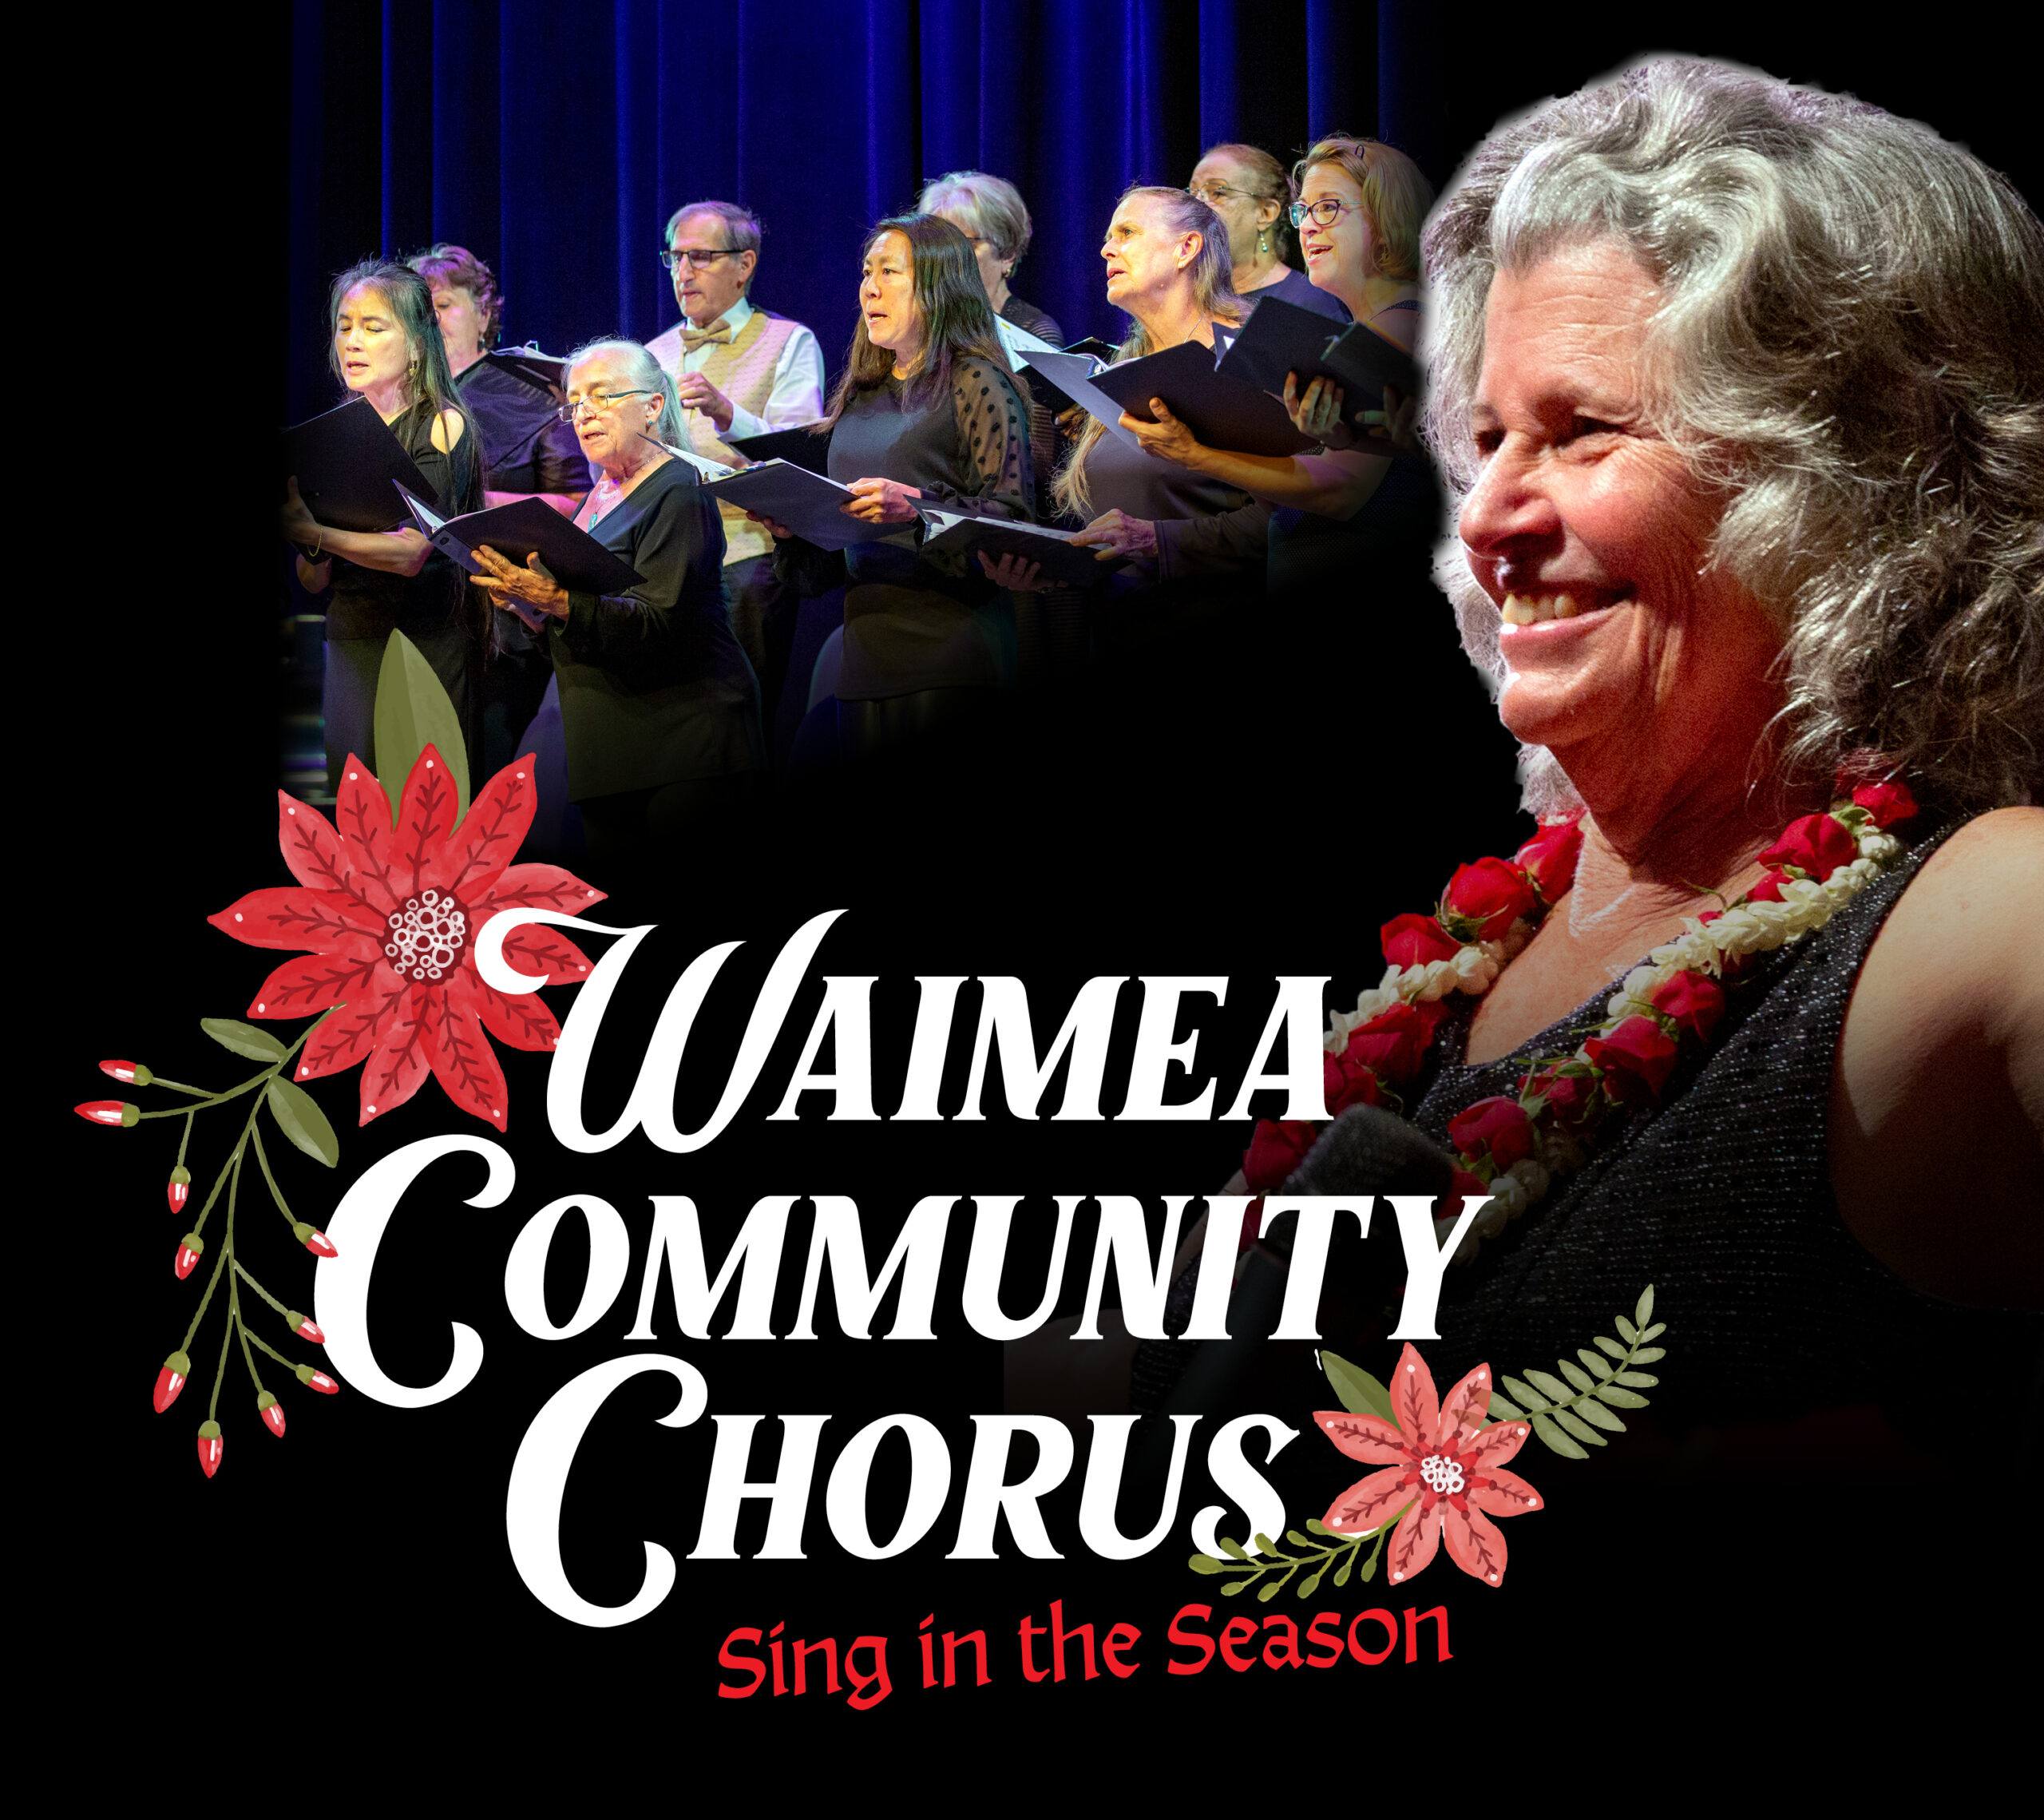 Waiea community choir sing in the season.